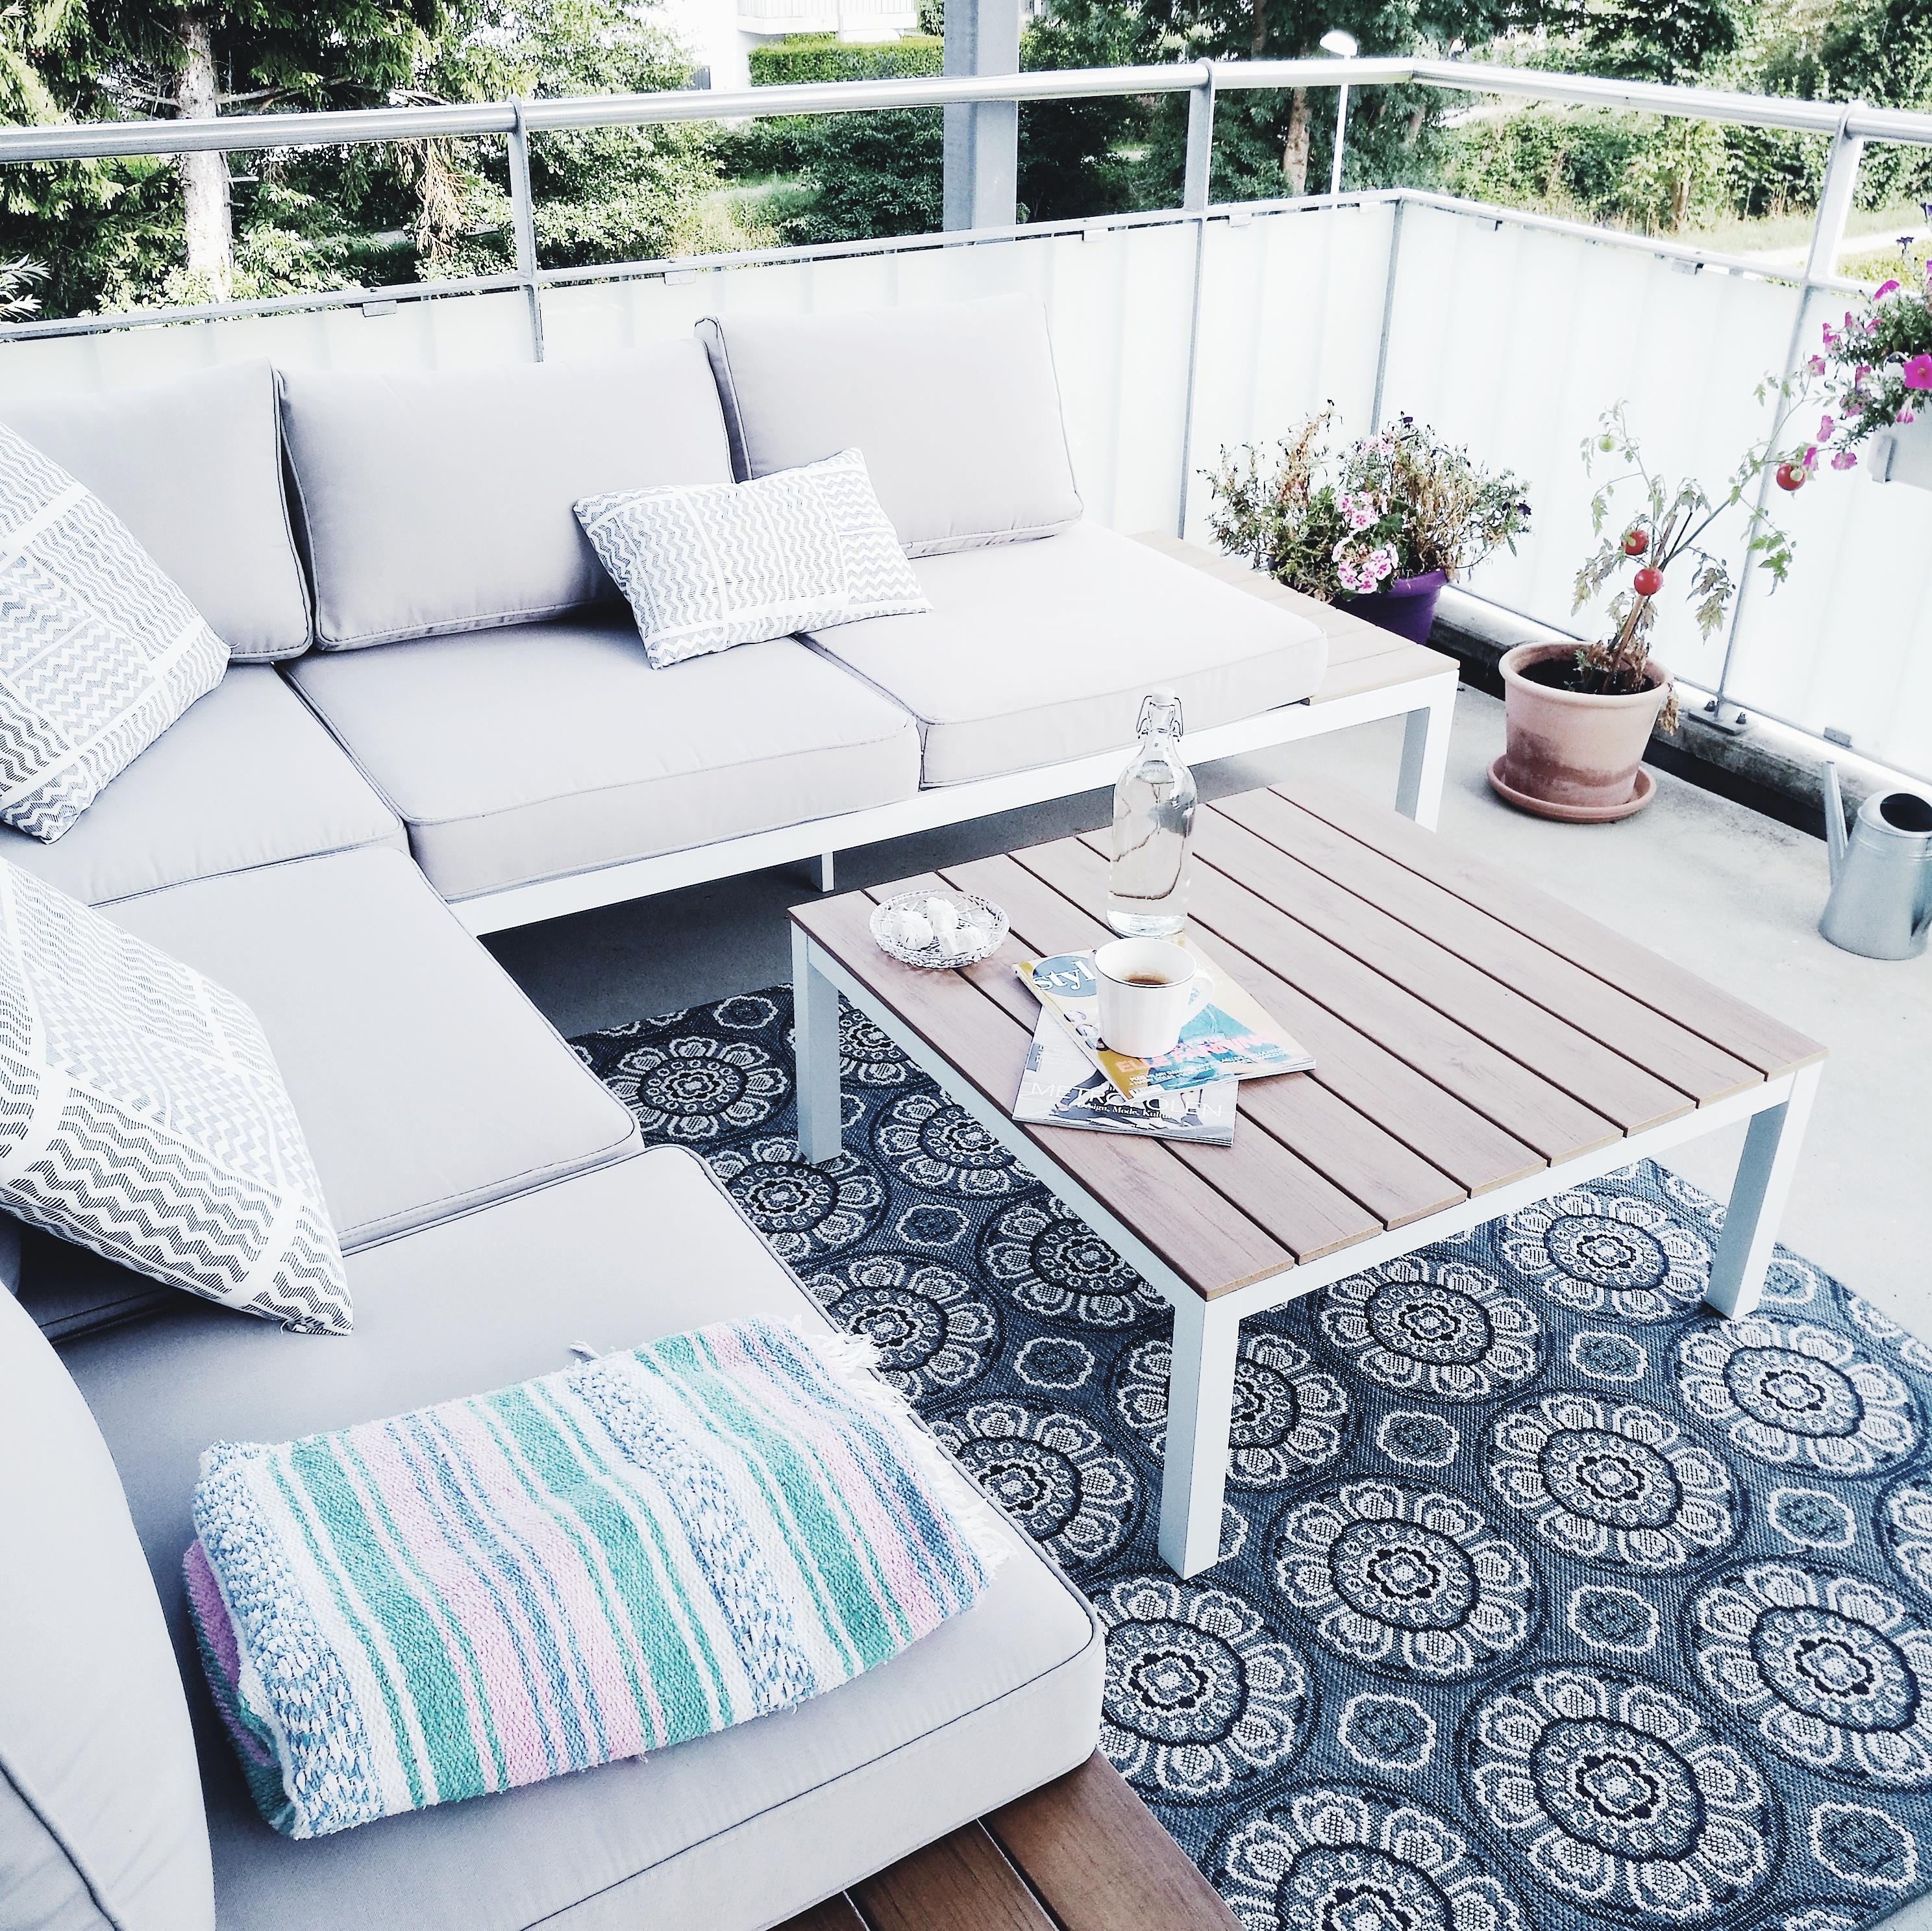 Auf dich freue ich mich schon wieder😍 #sommer #lounge #balkon #vondirinspiriert